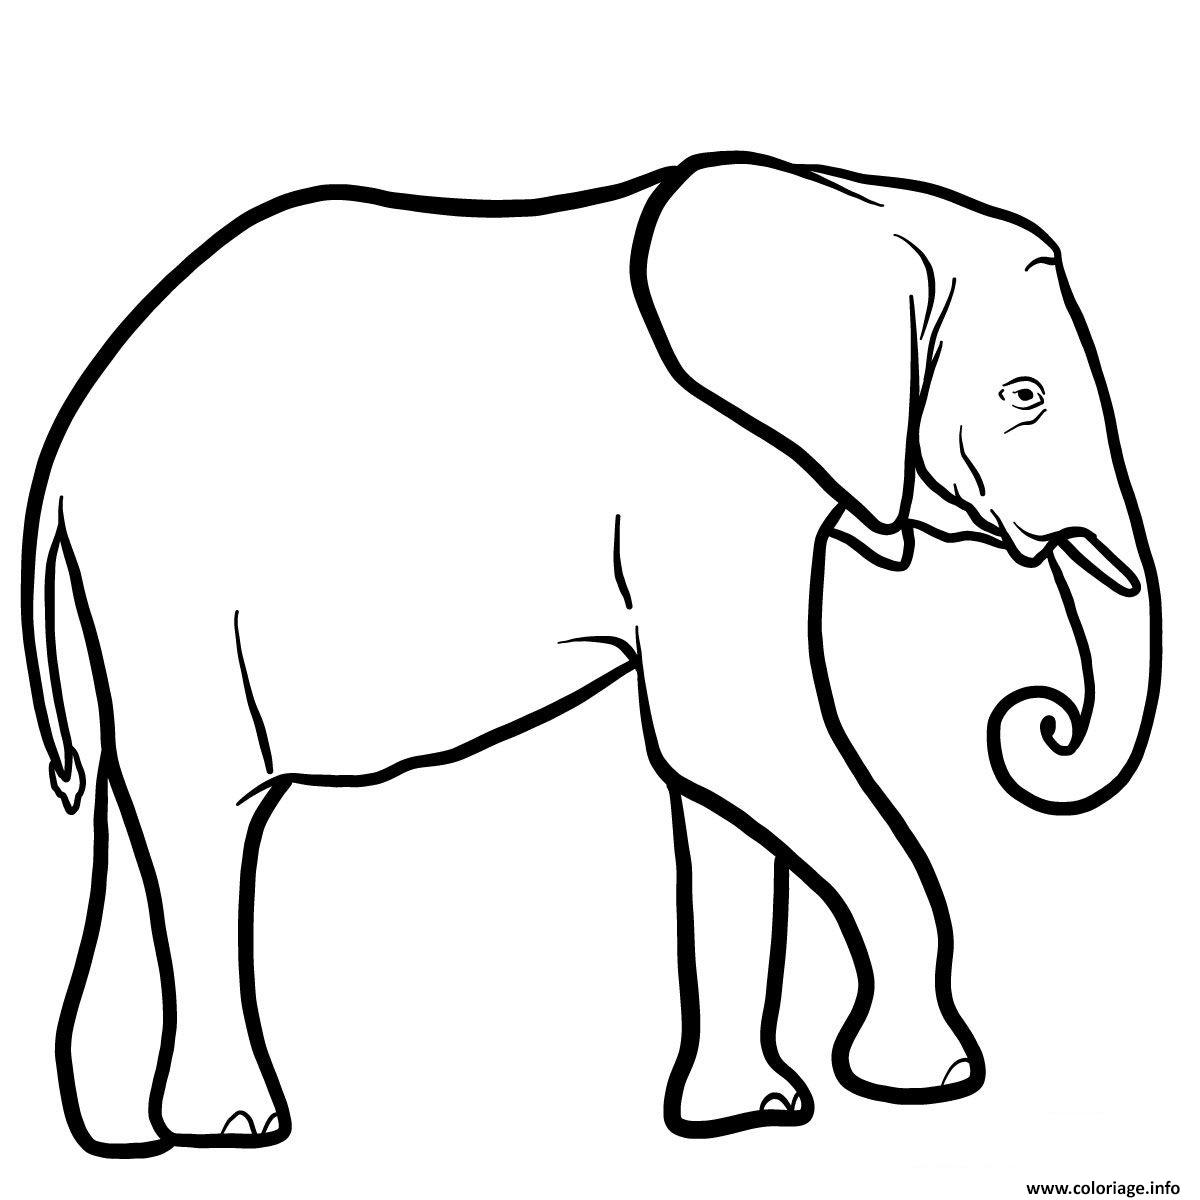 Dessin elephant afrique australe Coloriage Gratuit à Imprimer